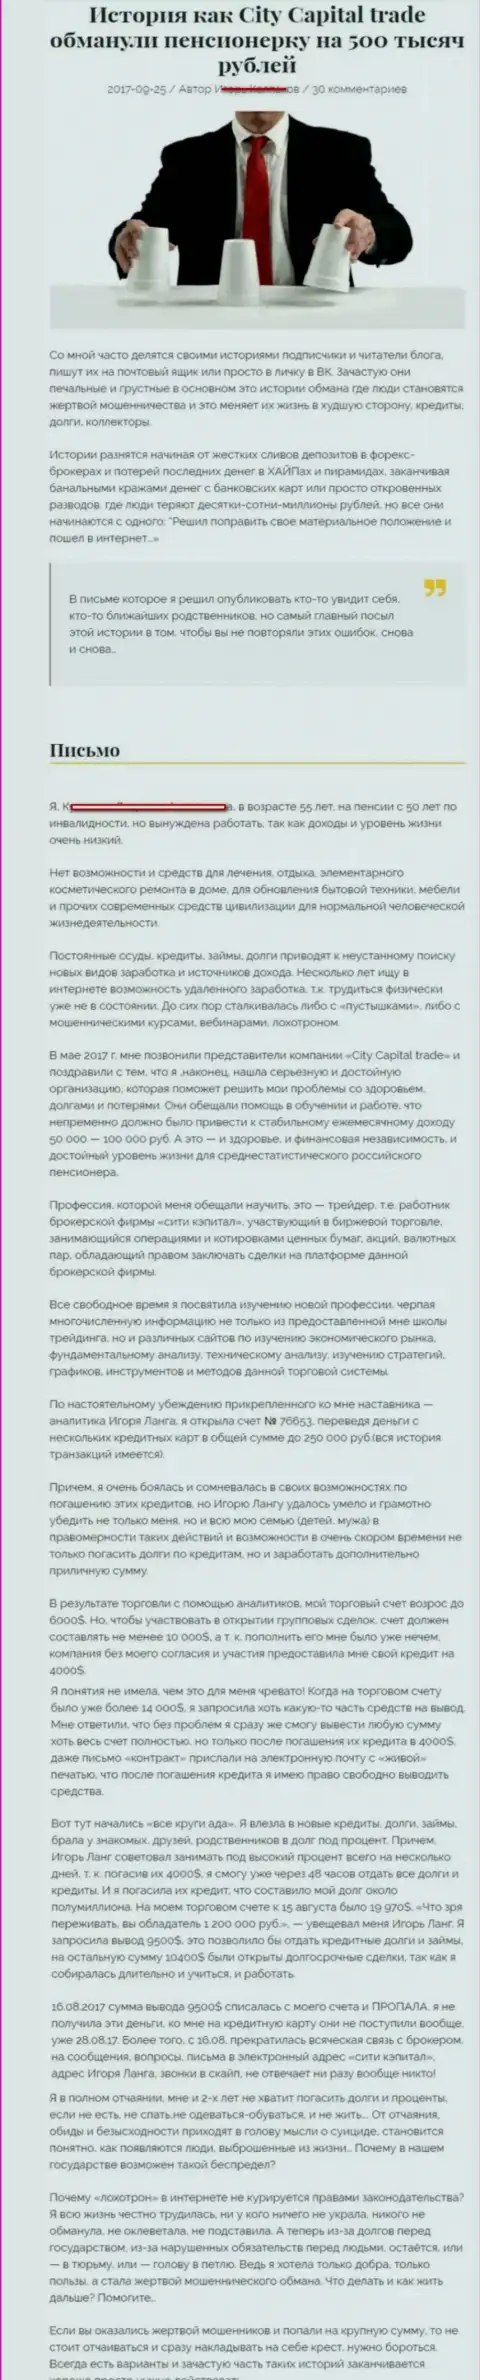 СитиКапитал Трейд развели клиентку пенсионного возраста - инвалида на общую сумму пятьсот тыс. рублей - МОШЕННИКИ !!!